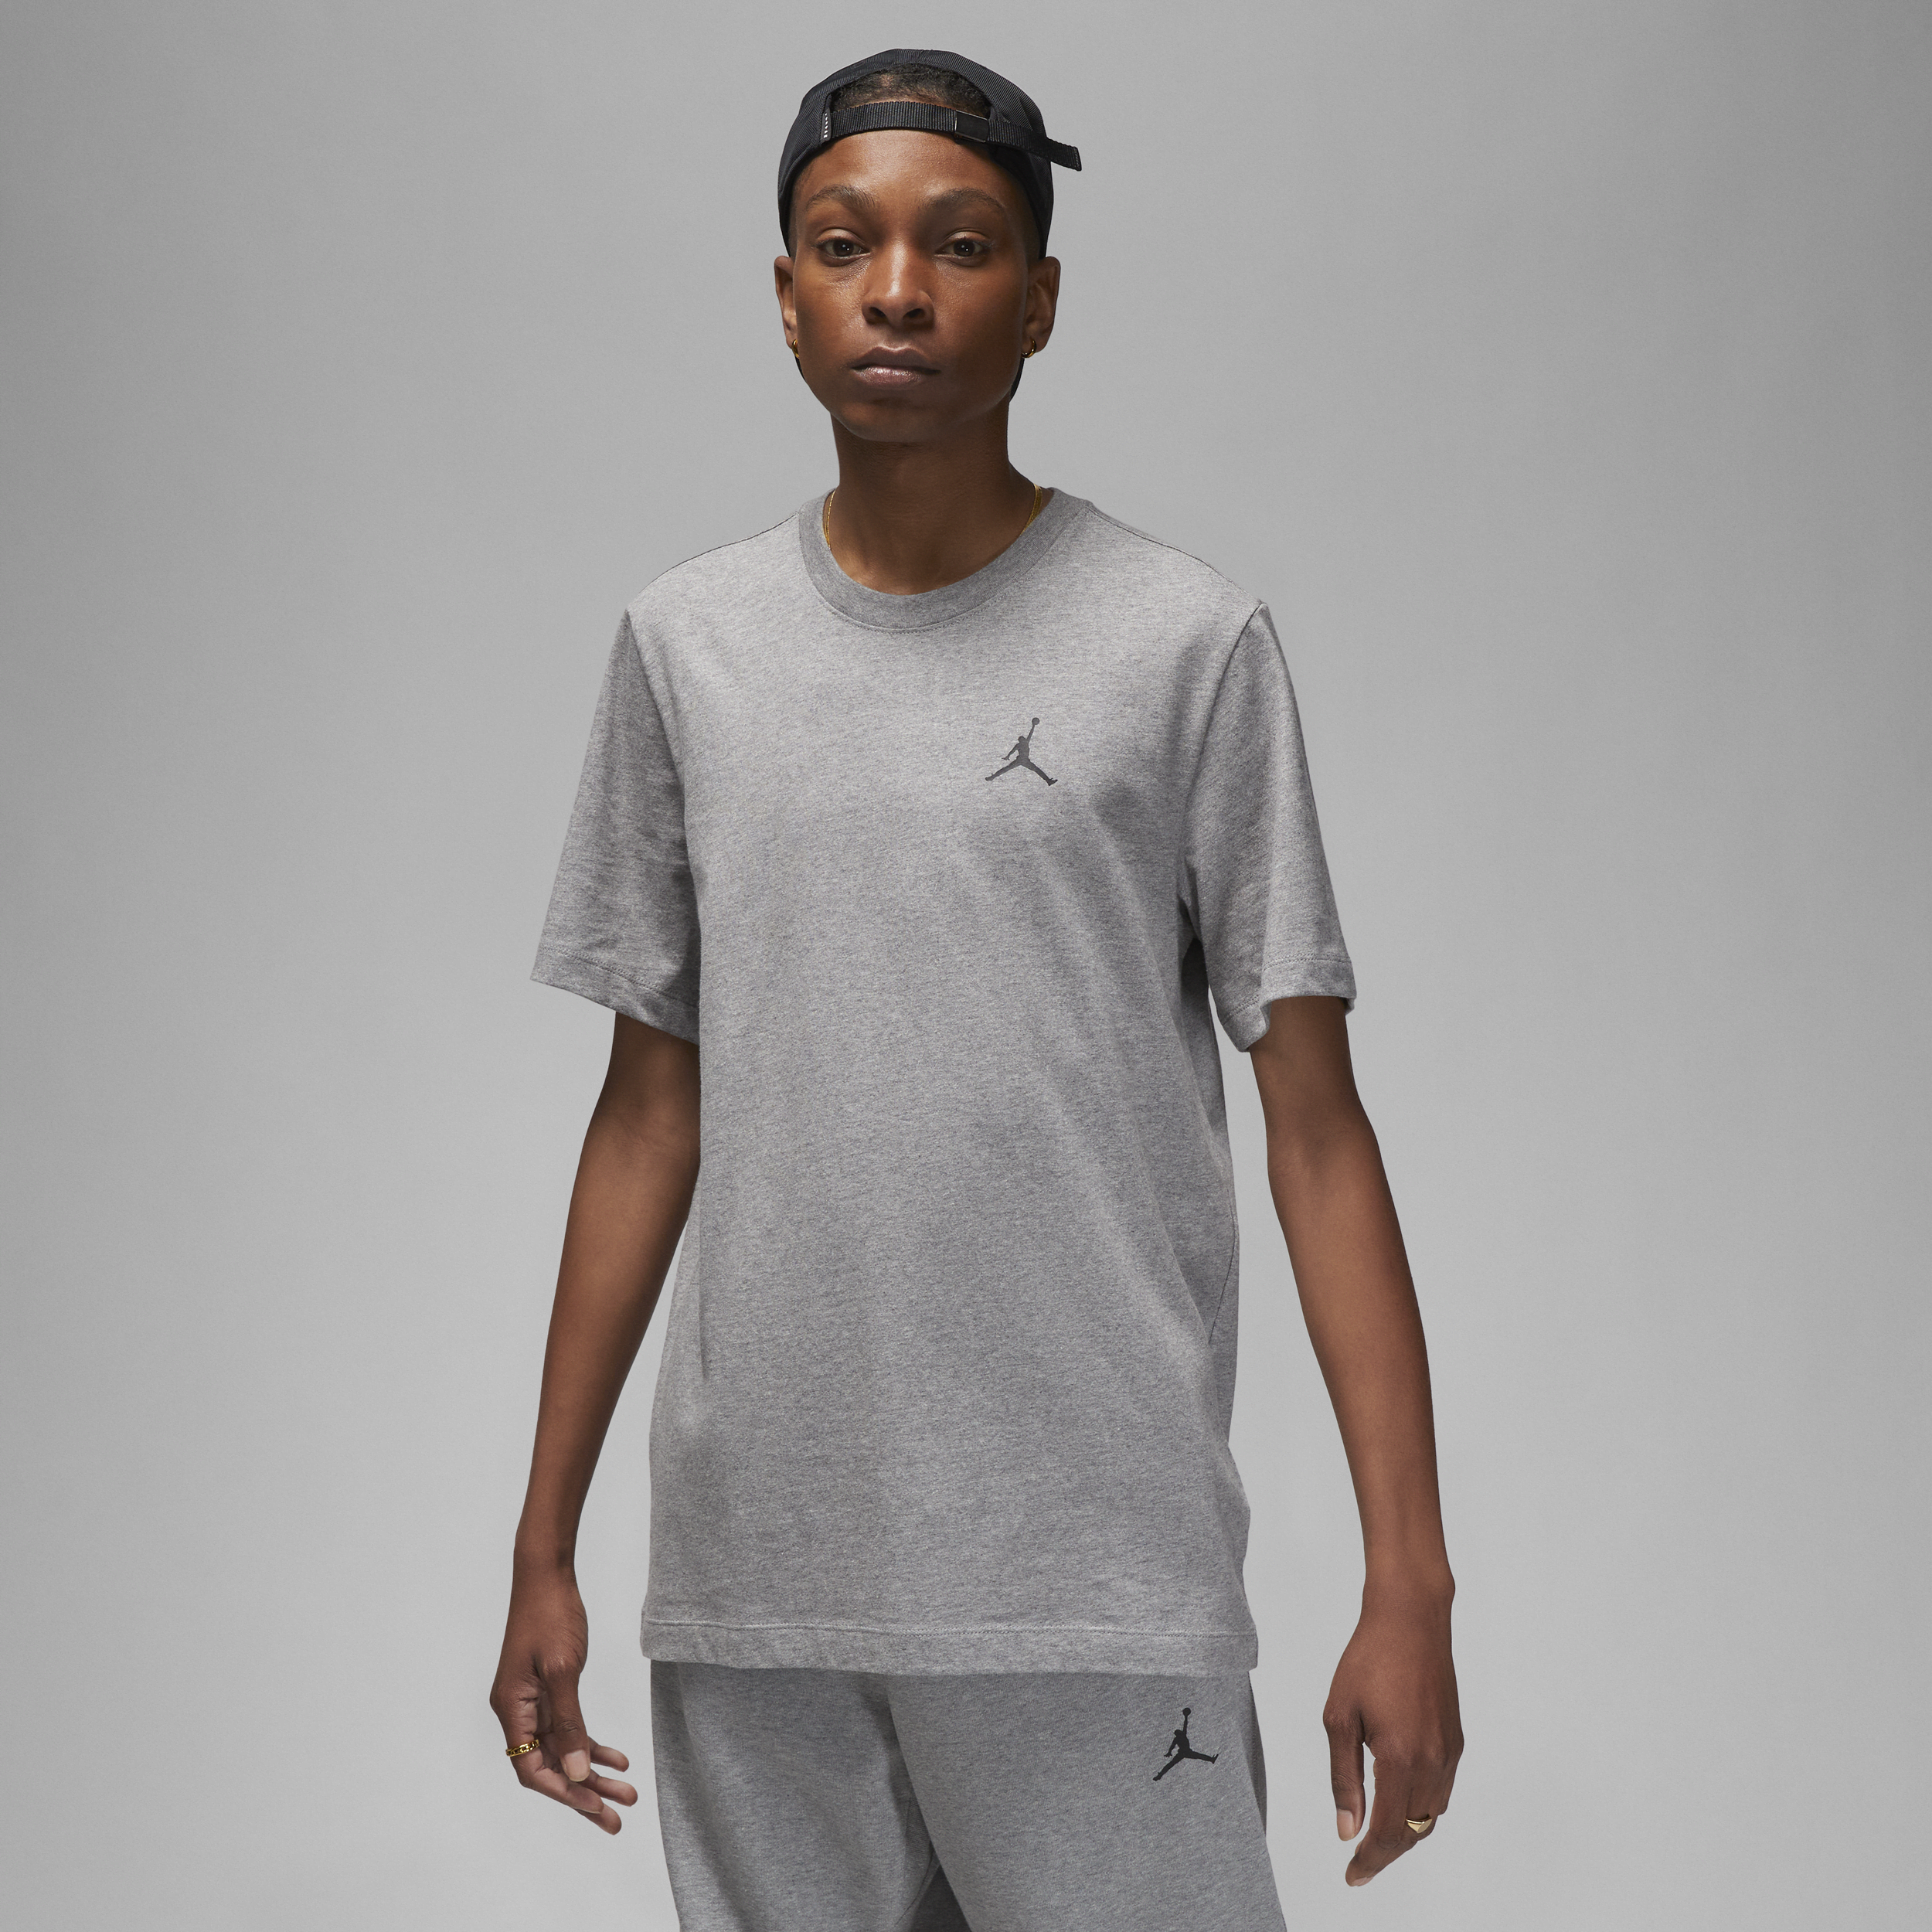 Jordan Brand-T-shirt til mænd - grå